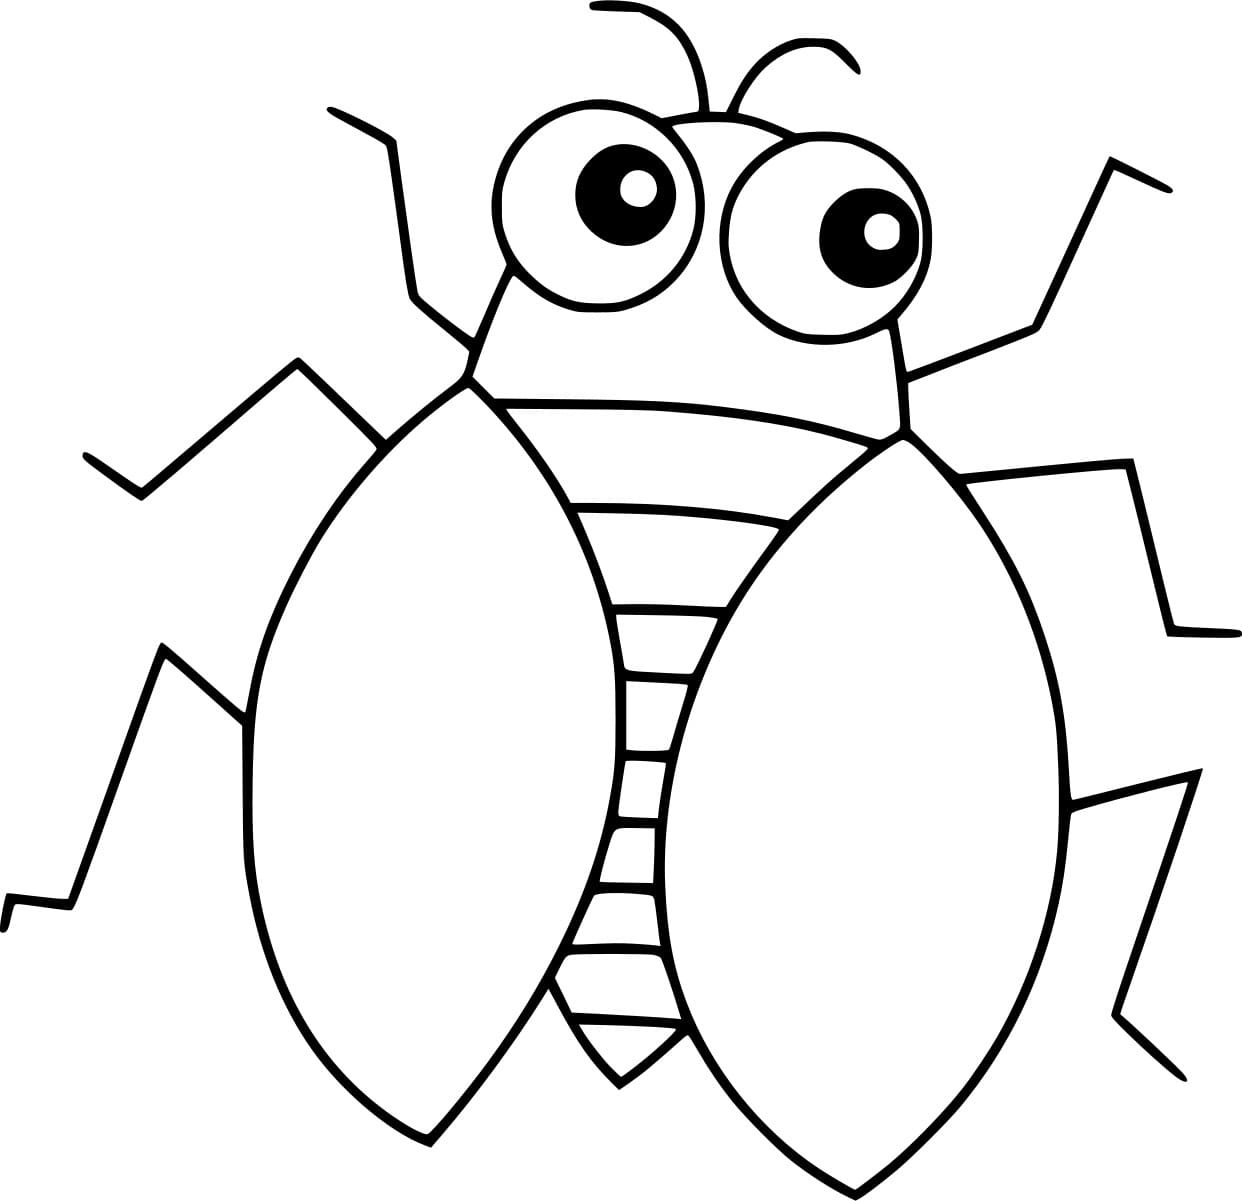 Easy Cartoon Cicada Image